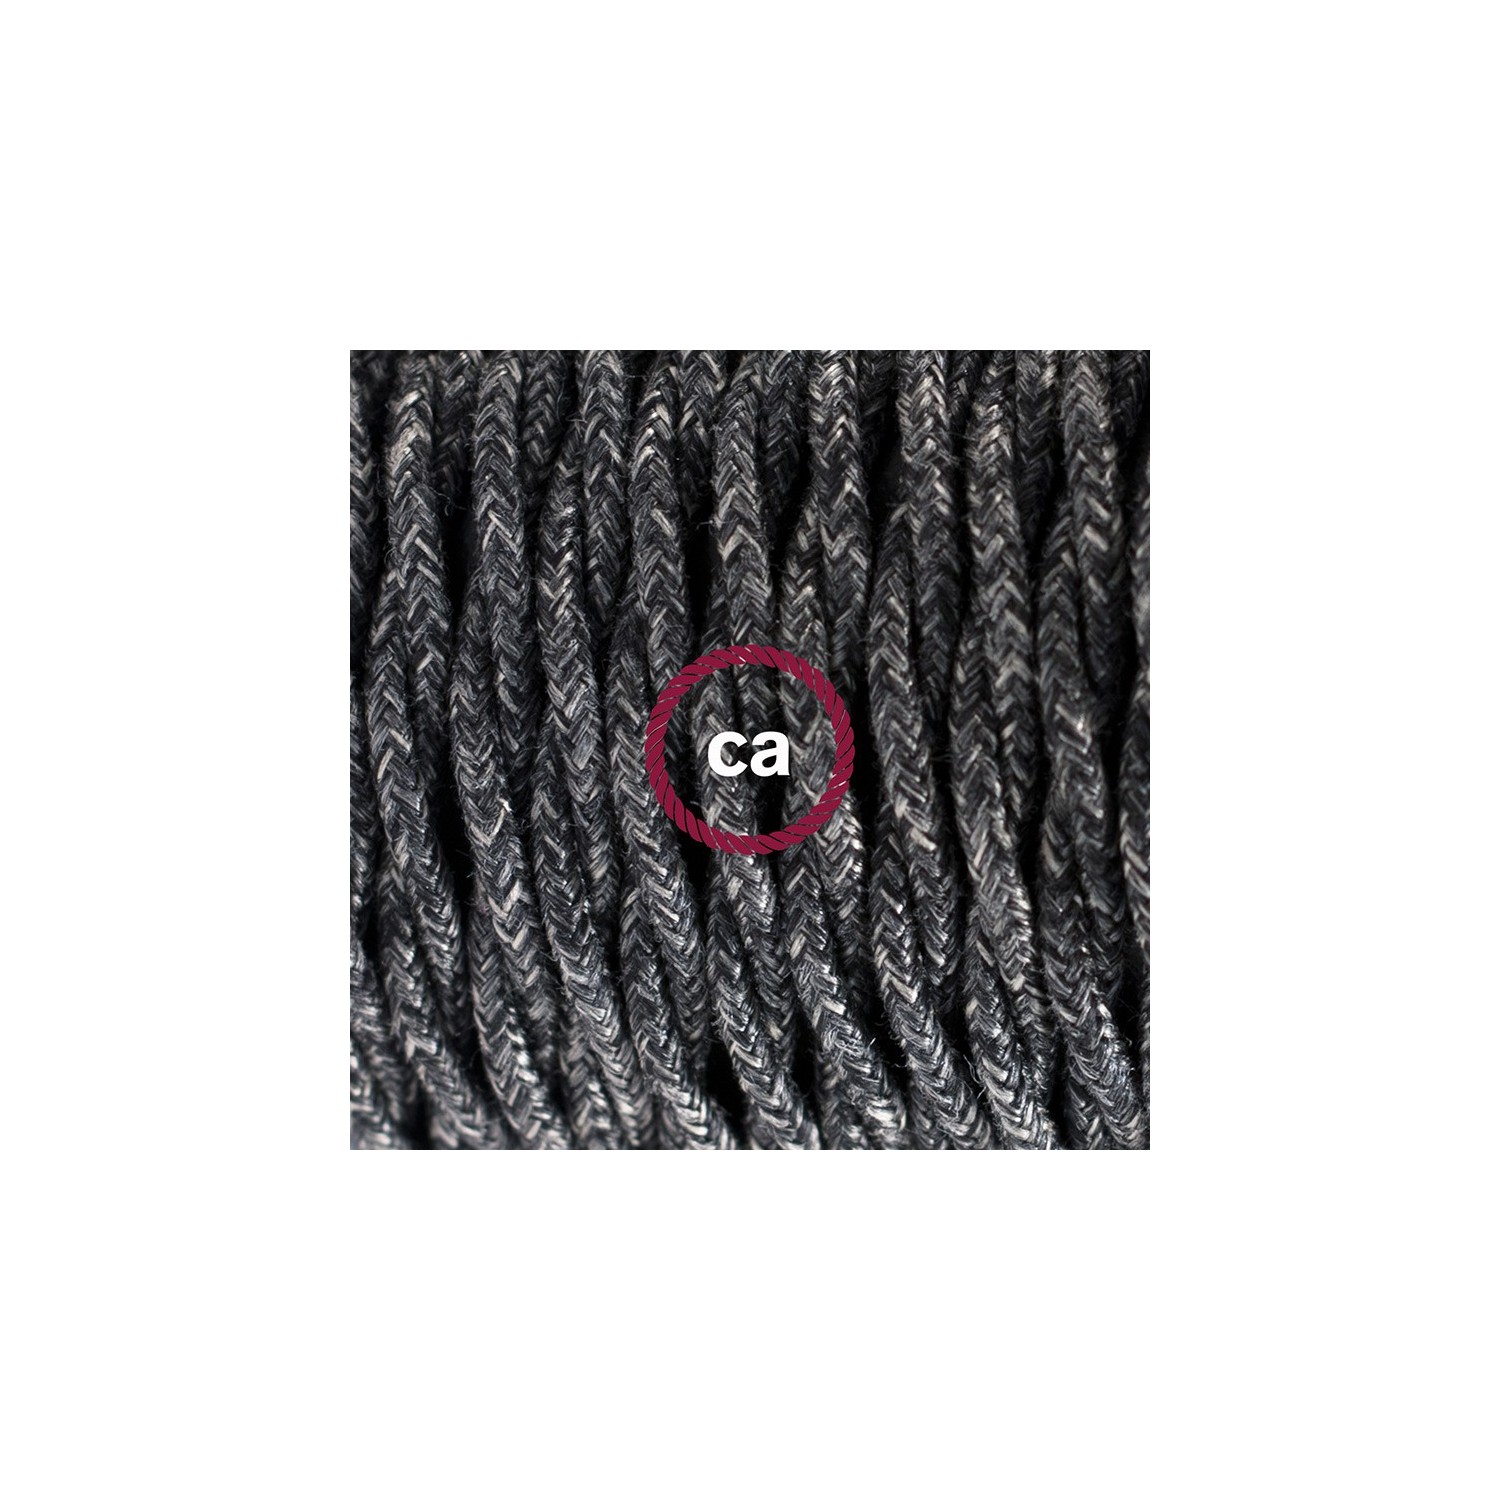 Sladdställ med fotströmbrytare, TN03 Antracit Naturligt linne 3 m. Välj färg på strömbrytare och kontakt